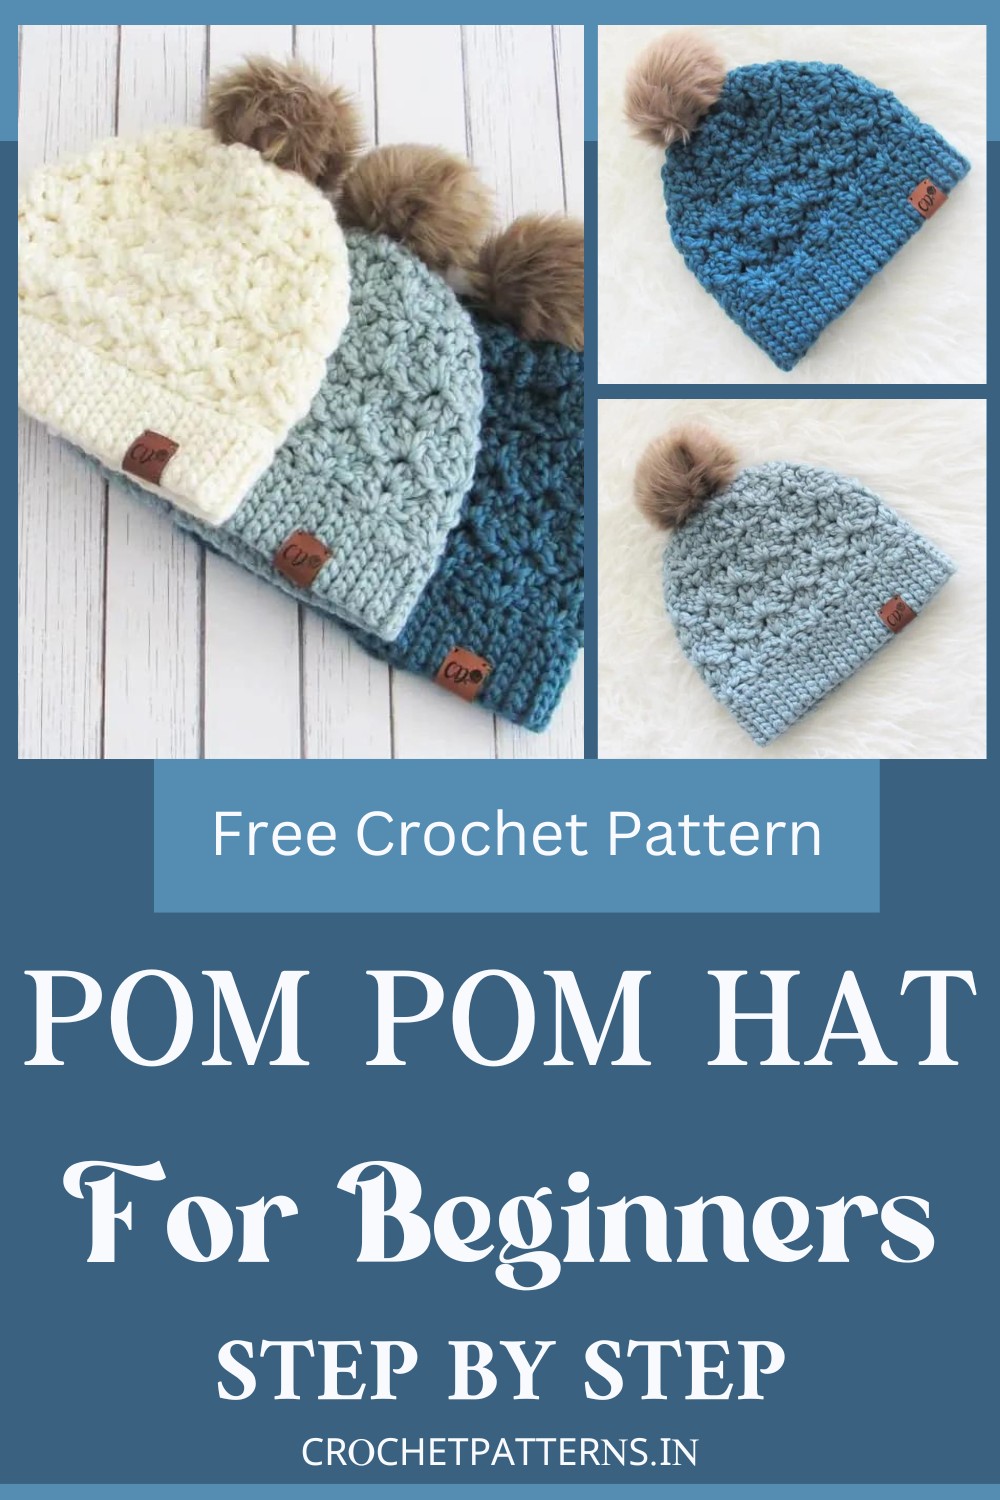 Crochet Pom Pom Hat For Beginners